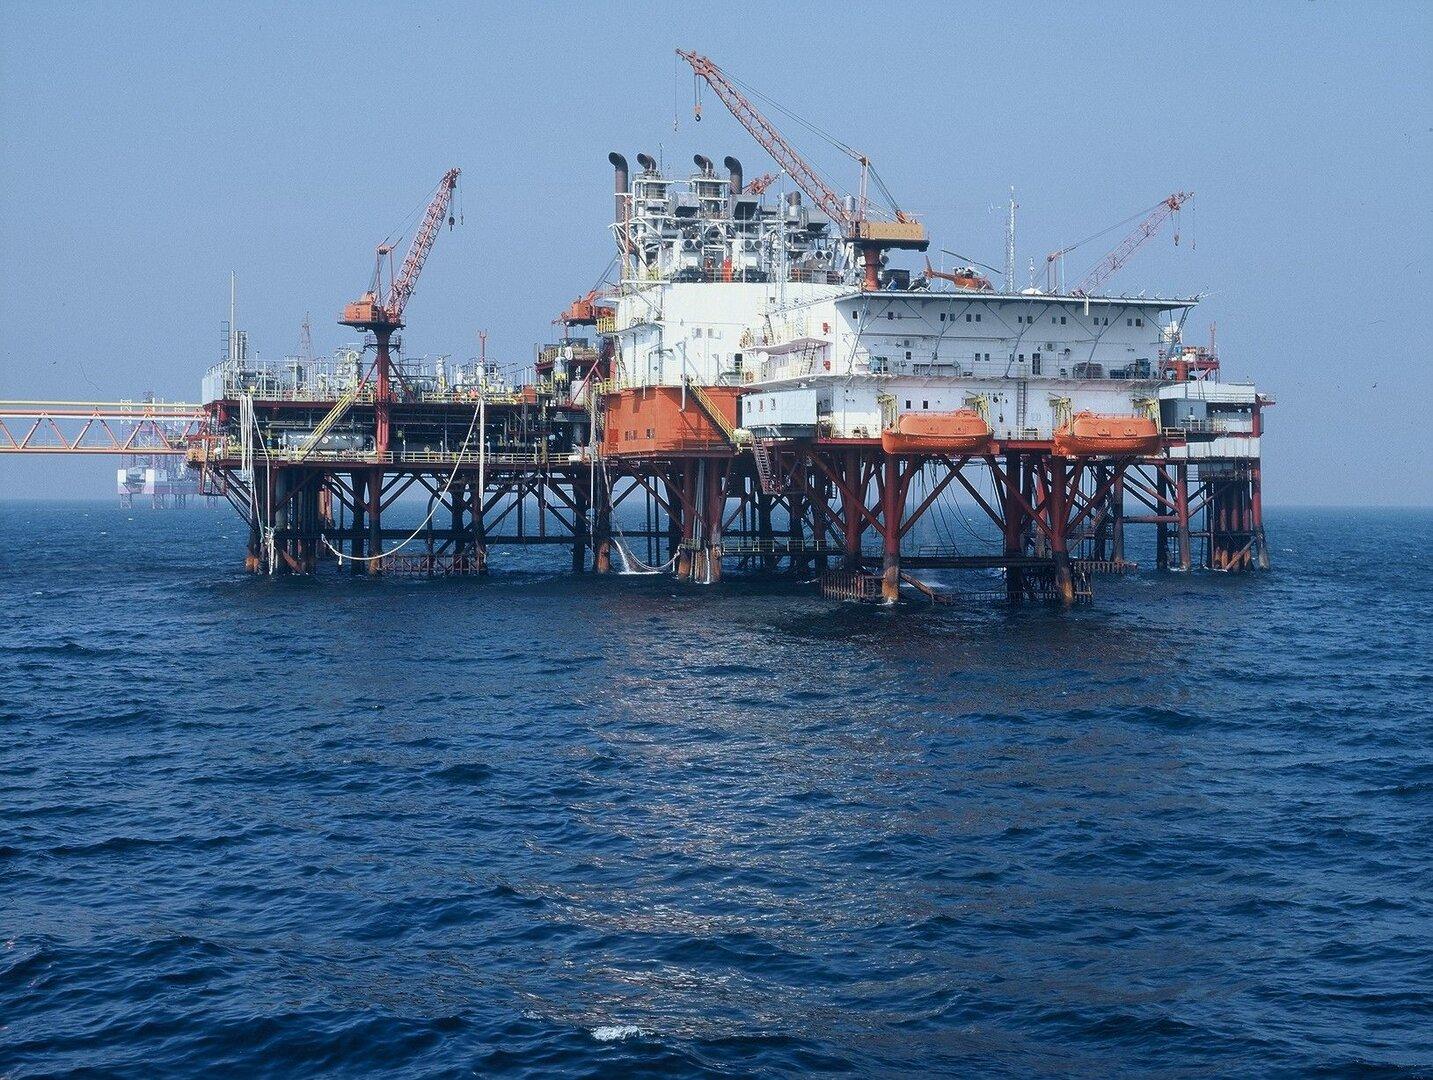 Greenpeace: Kriegsrisiken bedrohen OMV-Gasprojekt im Schwarzen Meer